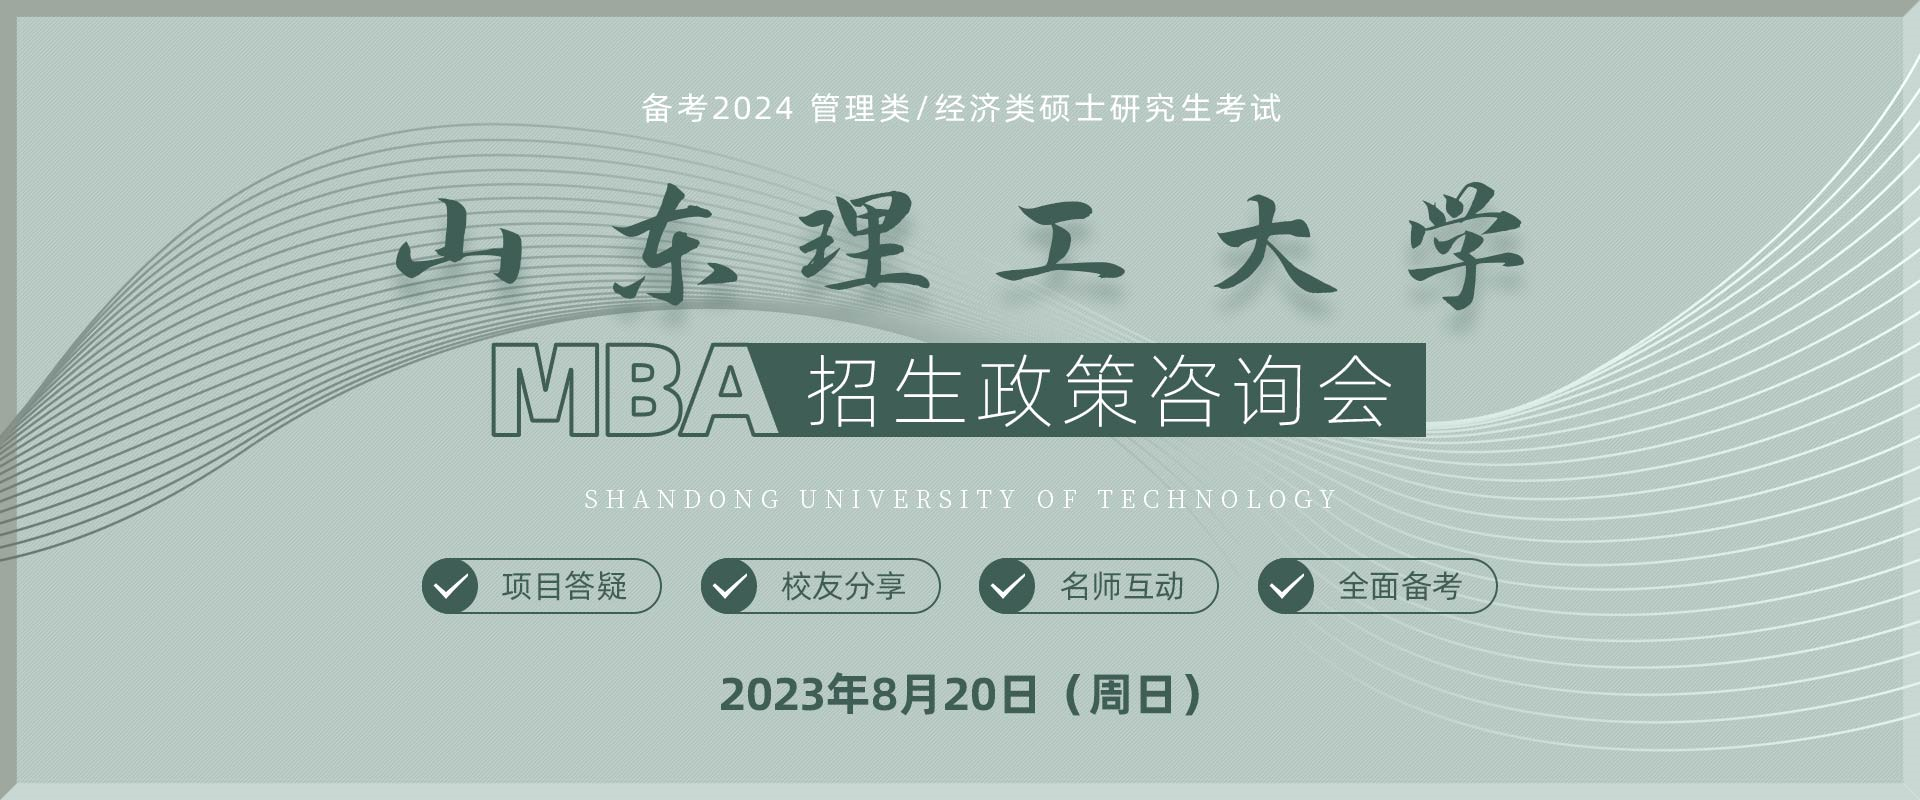 山东理工大学MBA招生政策咨询会